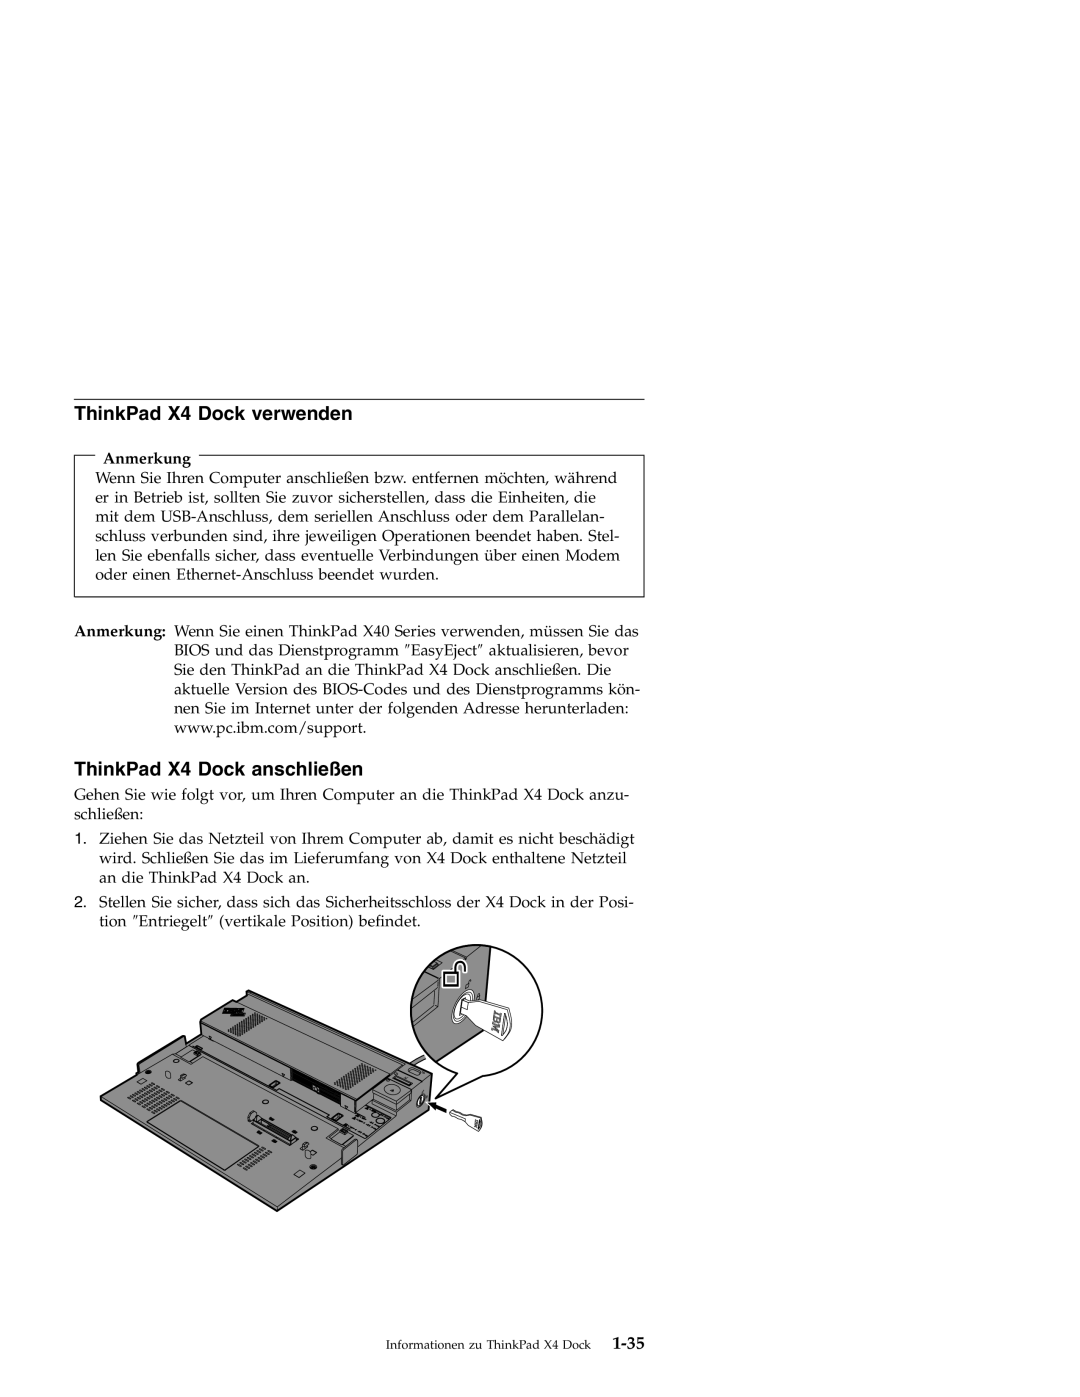 IBM manual ThinkPad X4 Dock verwenden, ThinkPad X4 Dock anschließen, Anmerkung 